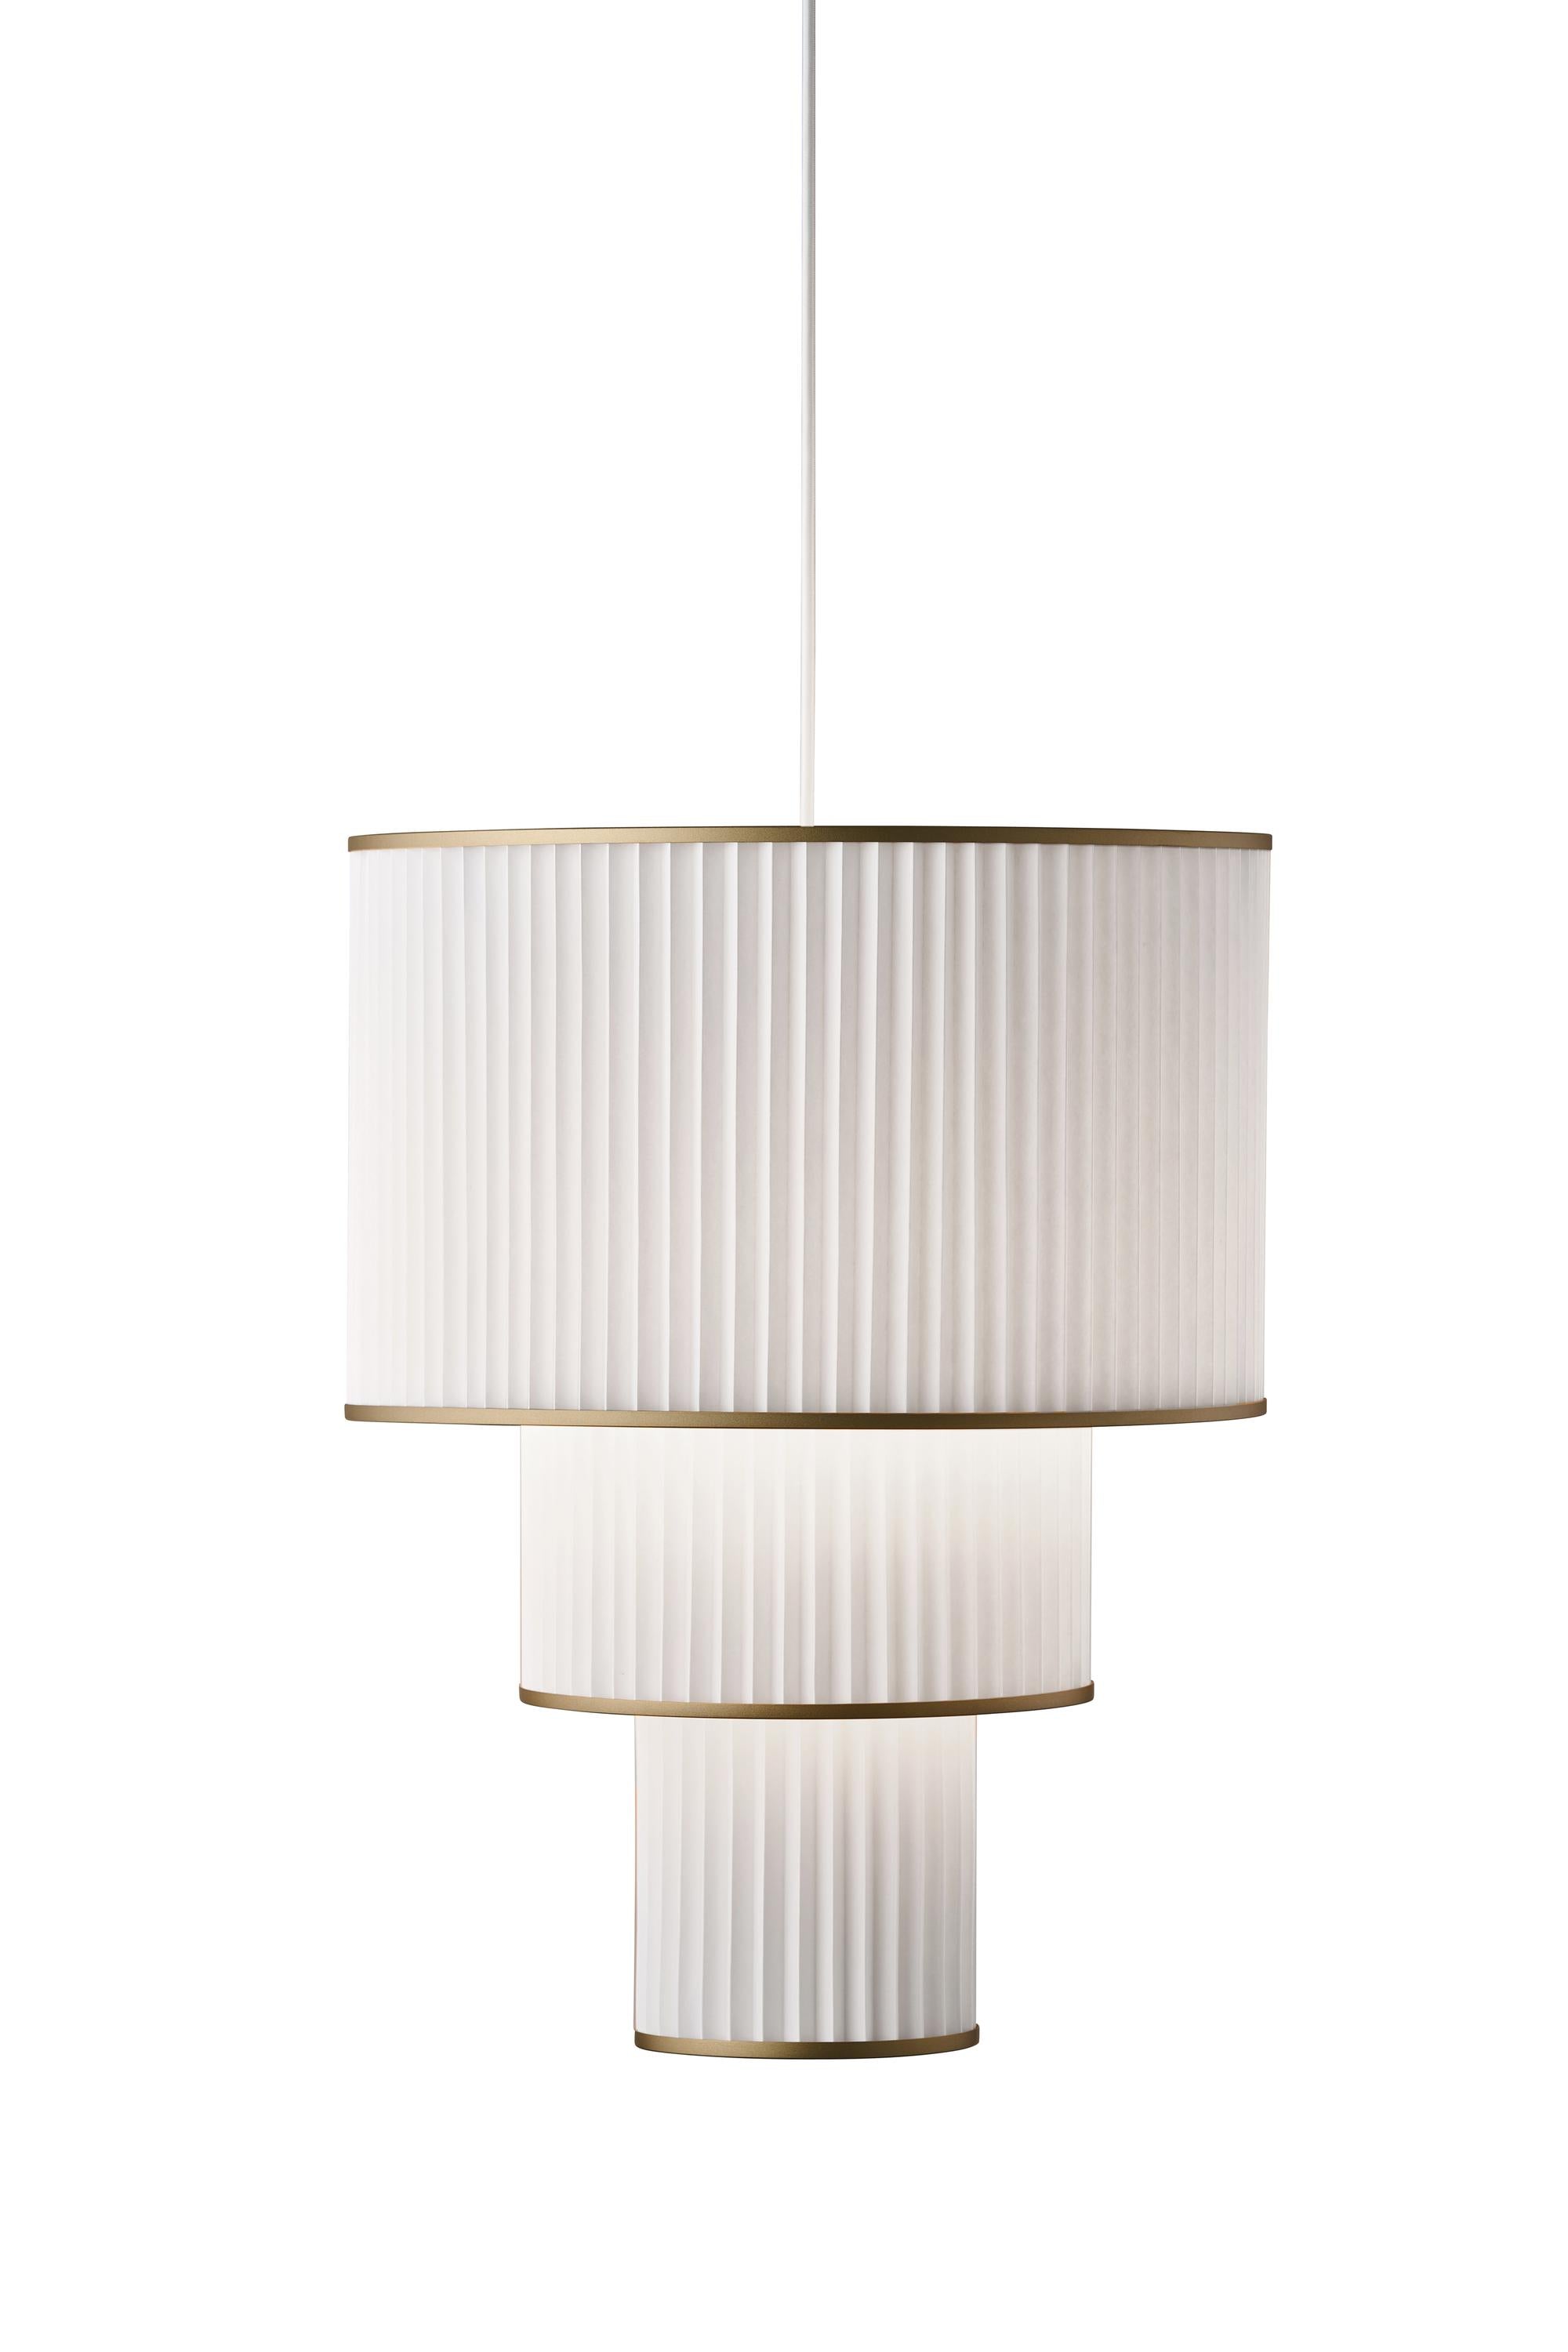 Le Klint Plivello Suspensionslampe Golden/Weiß mit 3 Farbtönen (S m l)